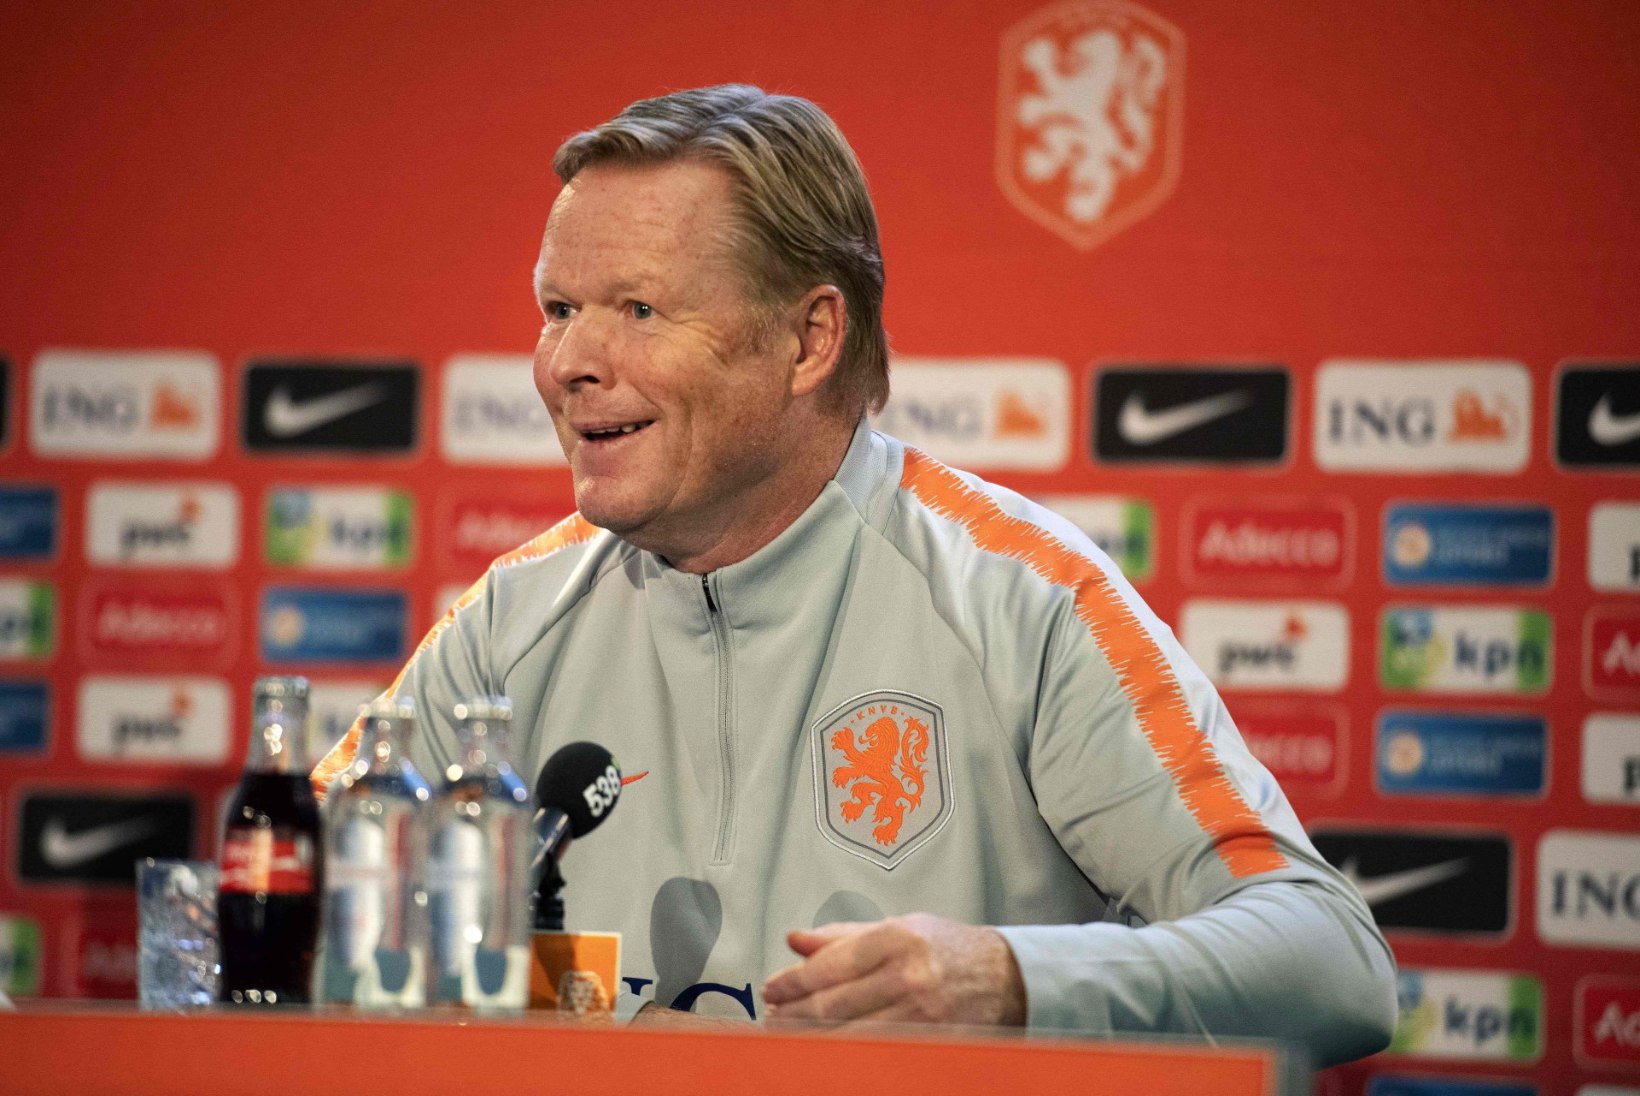 Hollandi jalgpallikoondise peatreener valikmängude eel: Saksamaa matš pole eriti oluline, küll aga kohtumine Eestiga